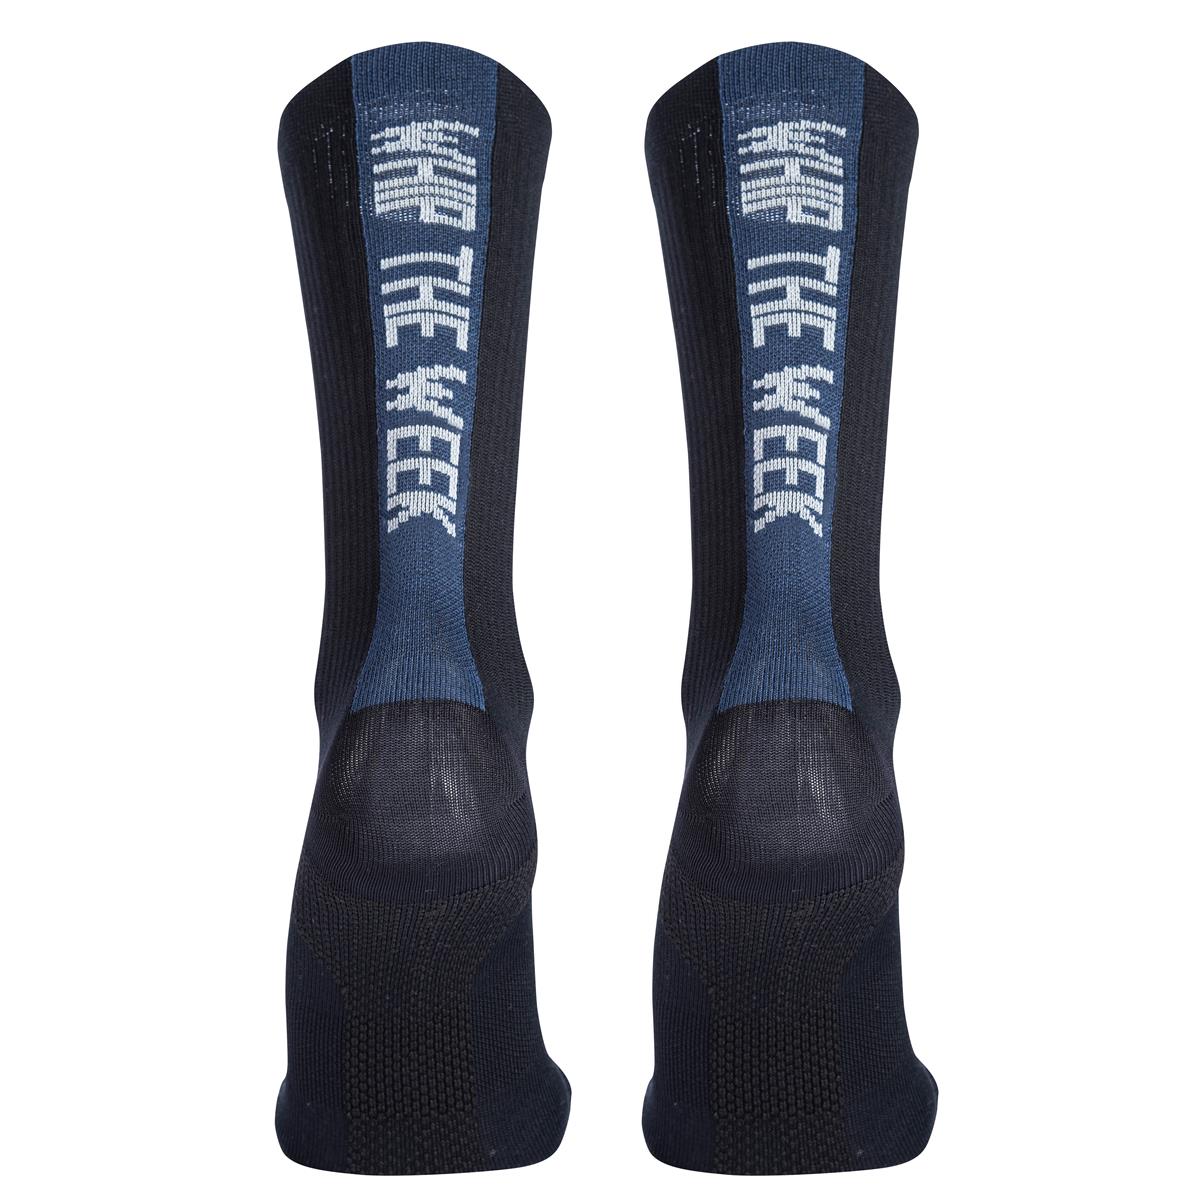 Northwave Socks Whip The Week Black/Dark Blue